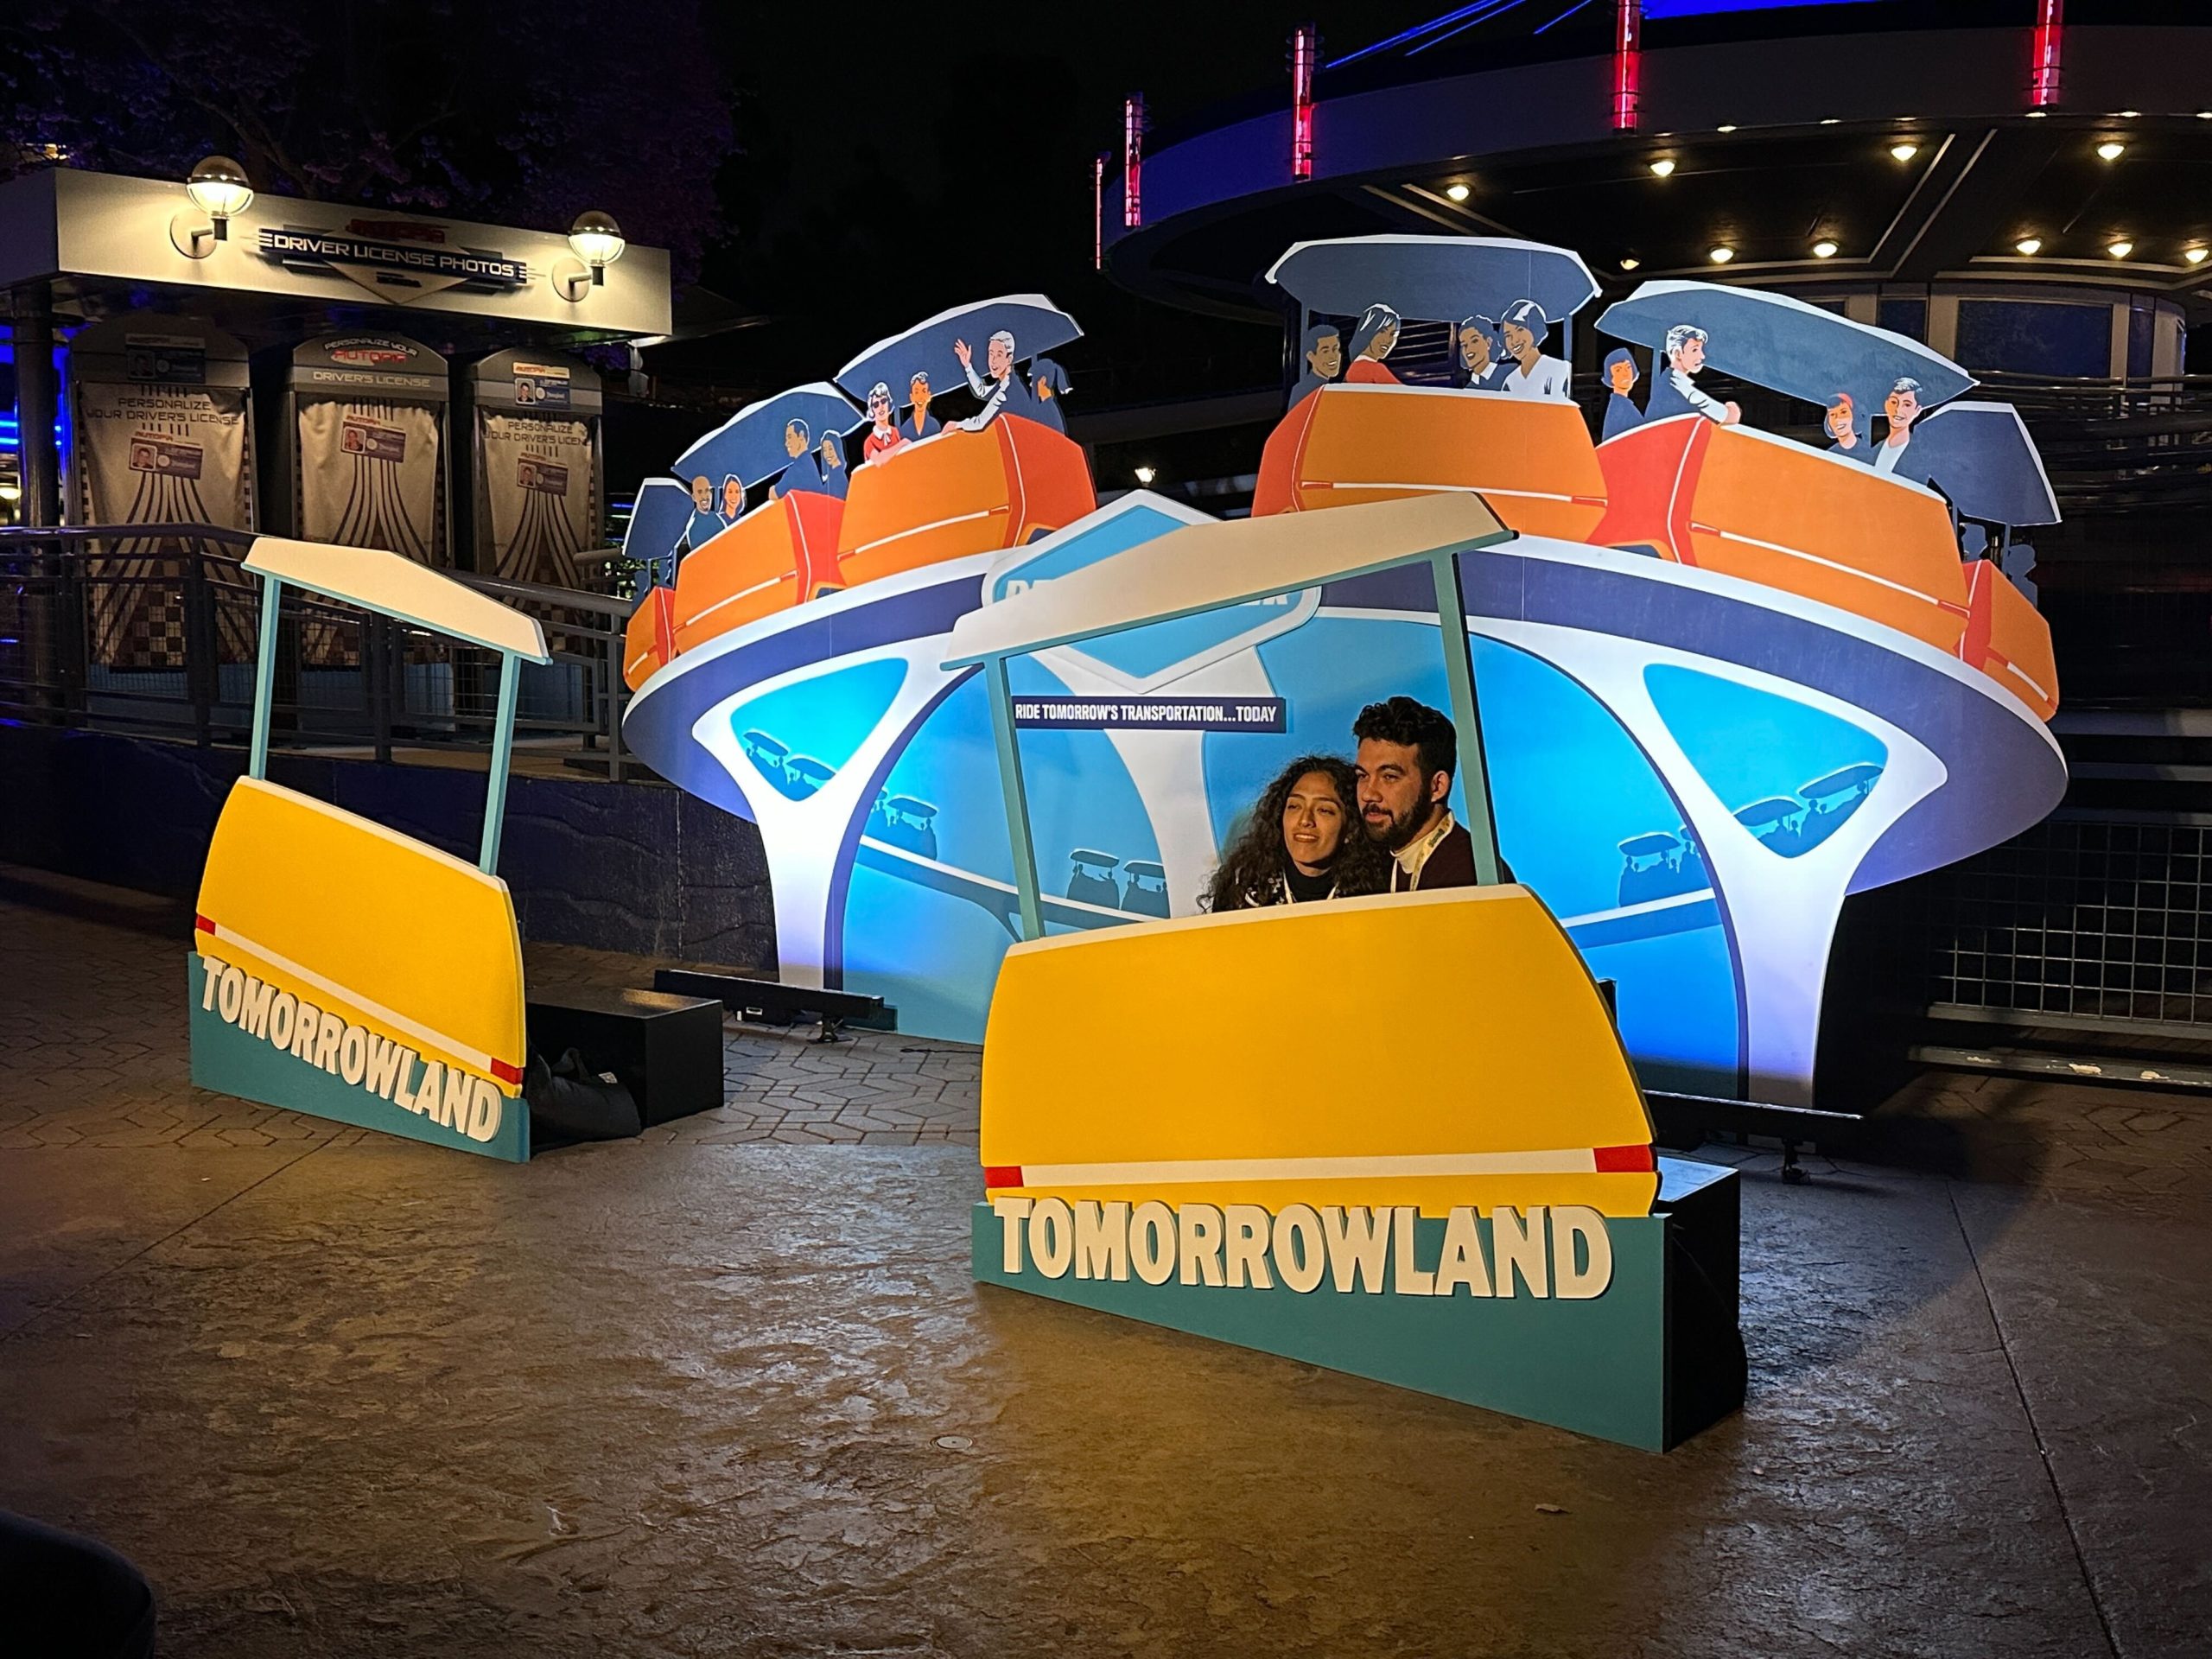 Disneyland After Dark: Throwback Nite Tomorrowland Photo Op